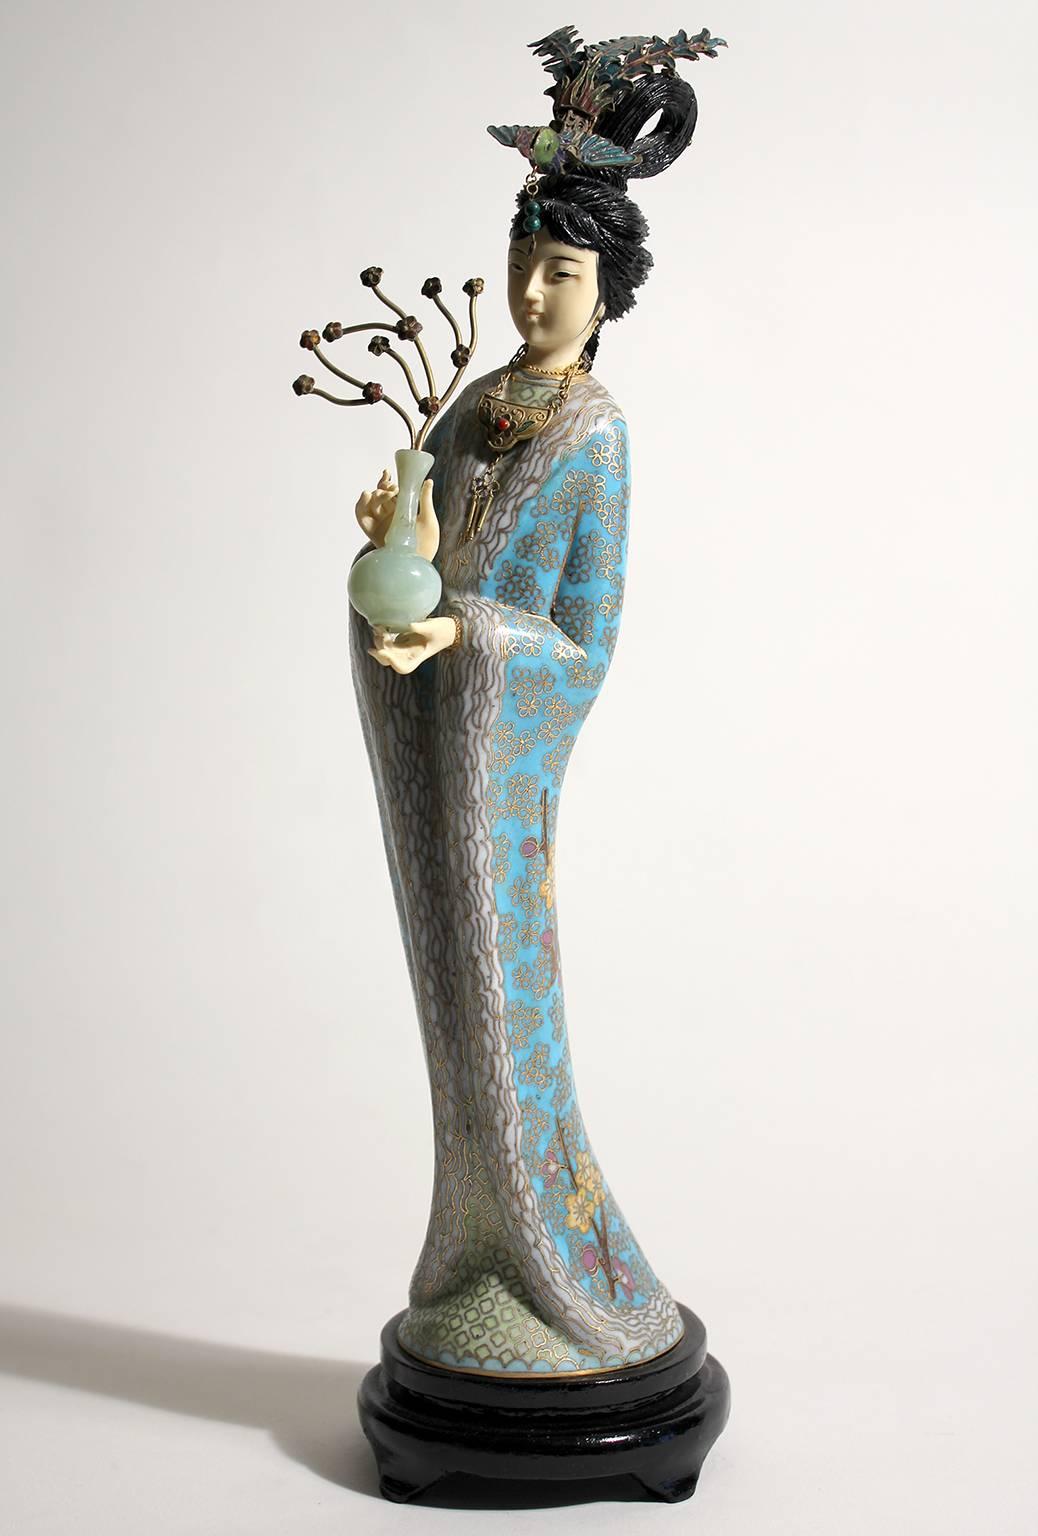 Atemberaubende chinesische Guanyin Cloisonné emaillierte Figur/Skulptur. Kommt mit dem originalen Holzständer. Hände und Kopf sind geschnitzt. Atemberaubende Farben und Details sind unübertroffen. Maße: 14